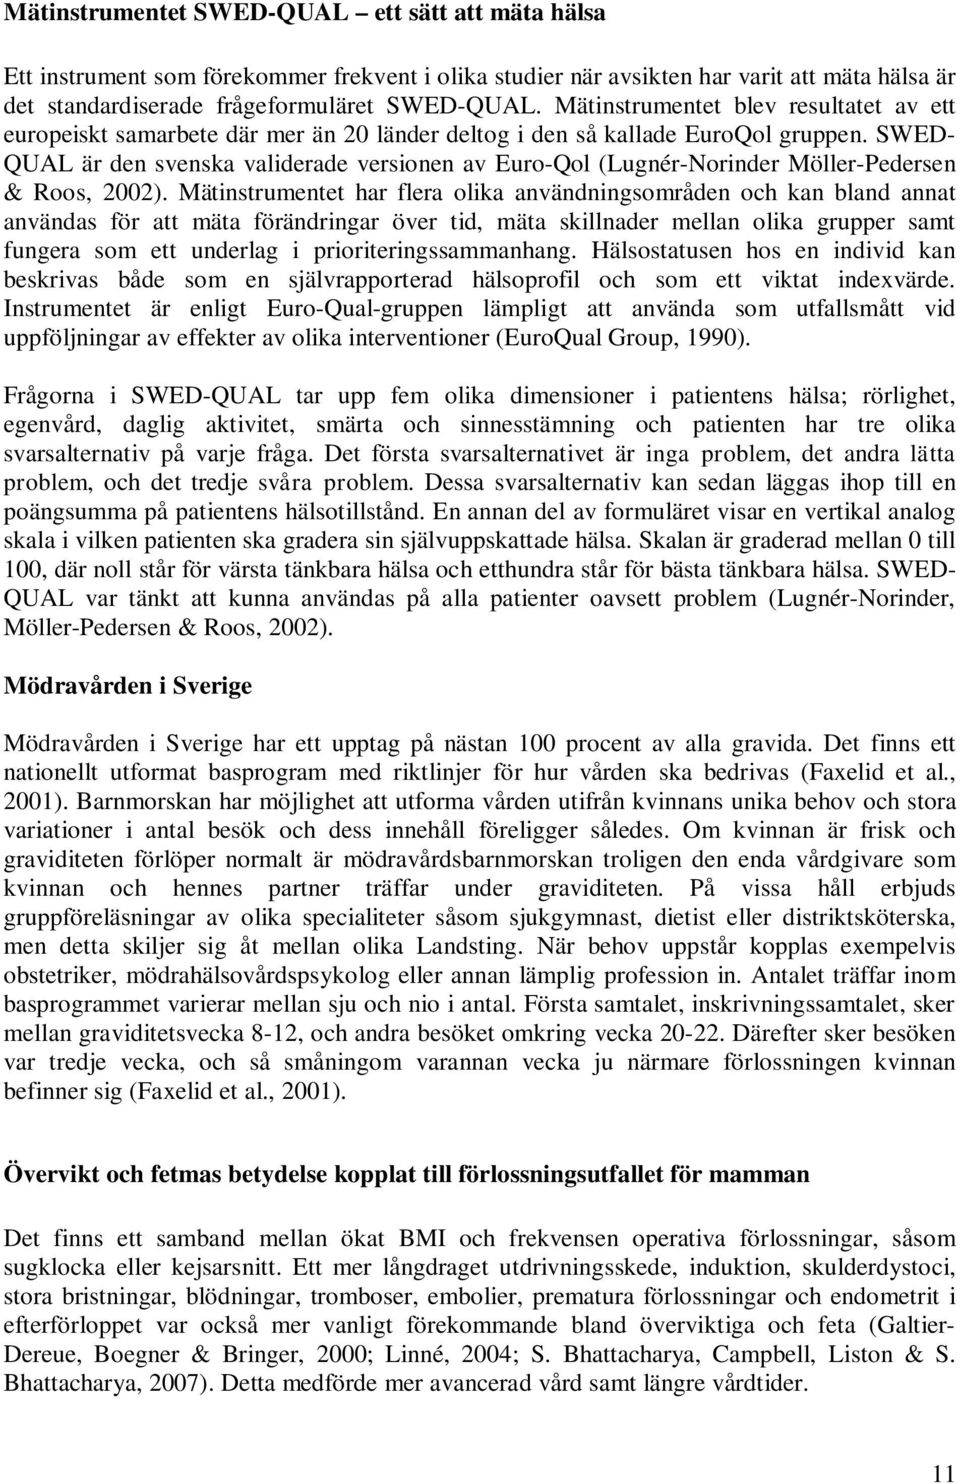 SWED- QUAL är den svenska validerade versionen av Euro-Qol (Lugnér-Norinder Möller-Pedersen & Roos, 2002).